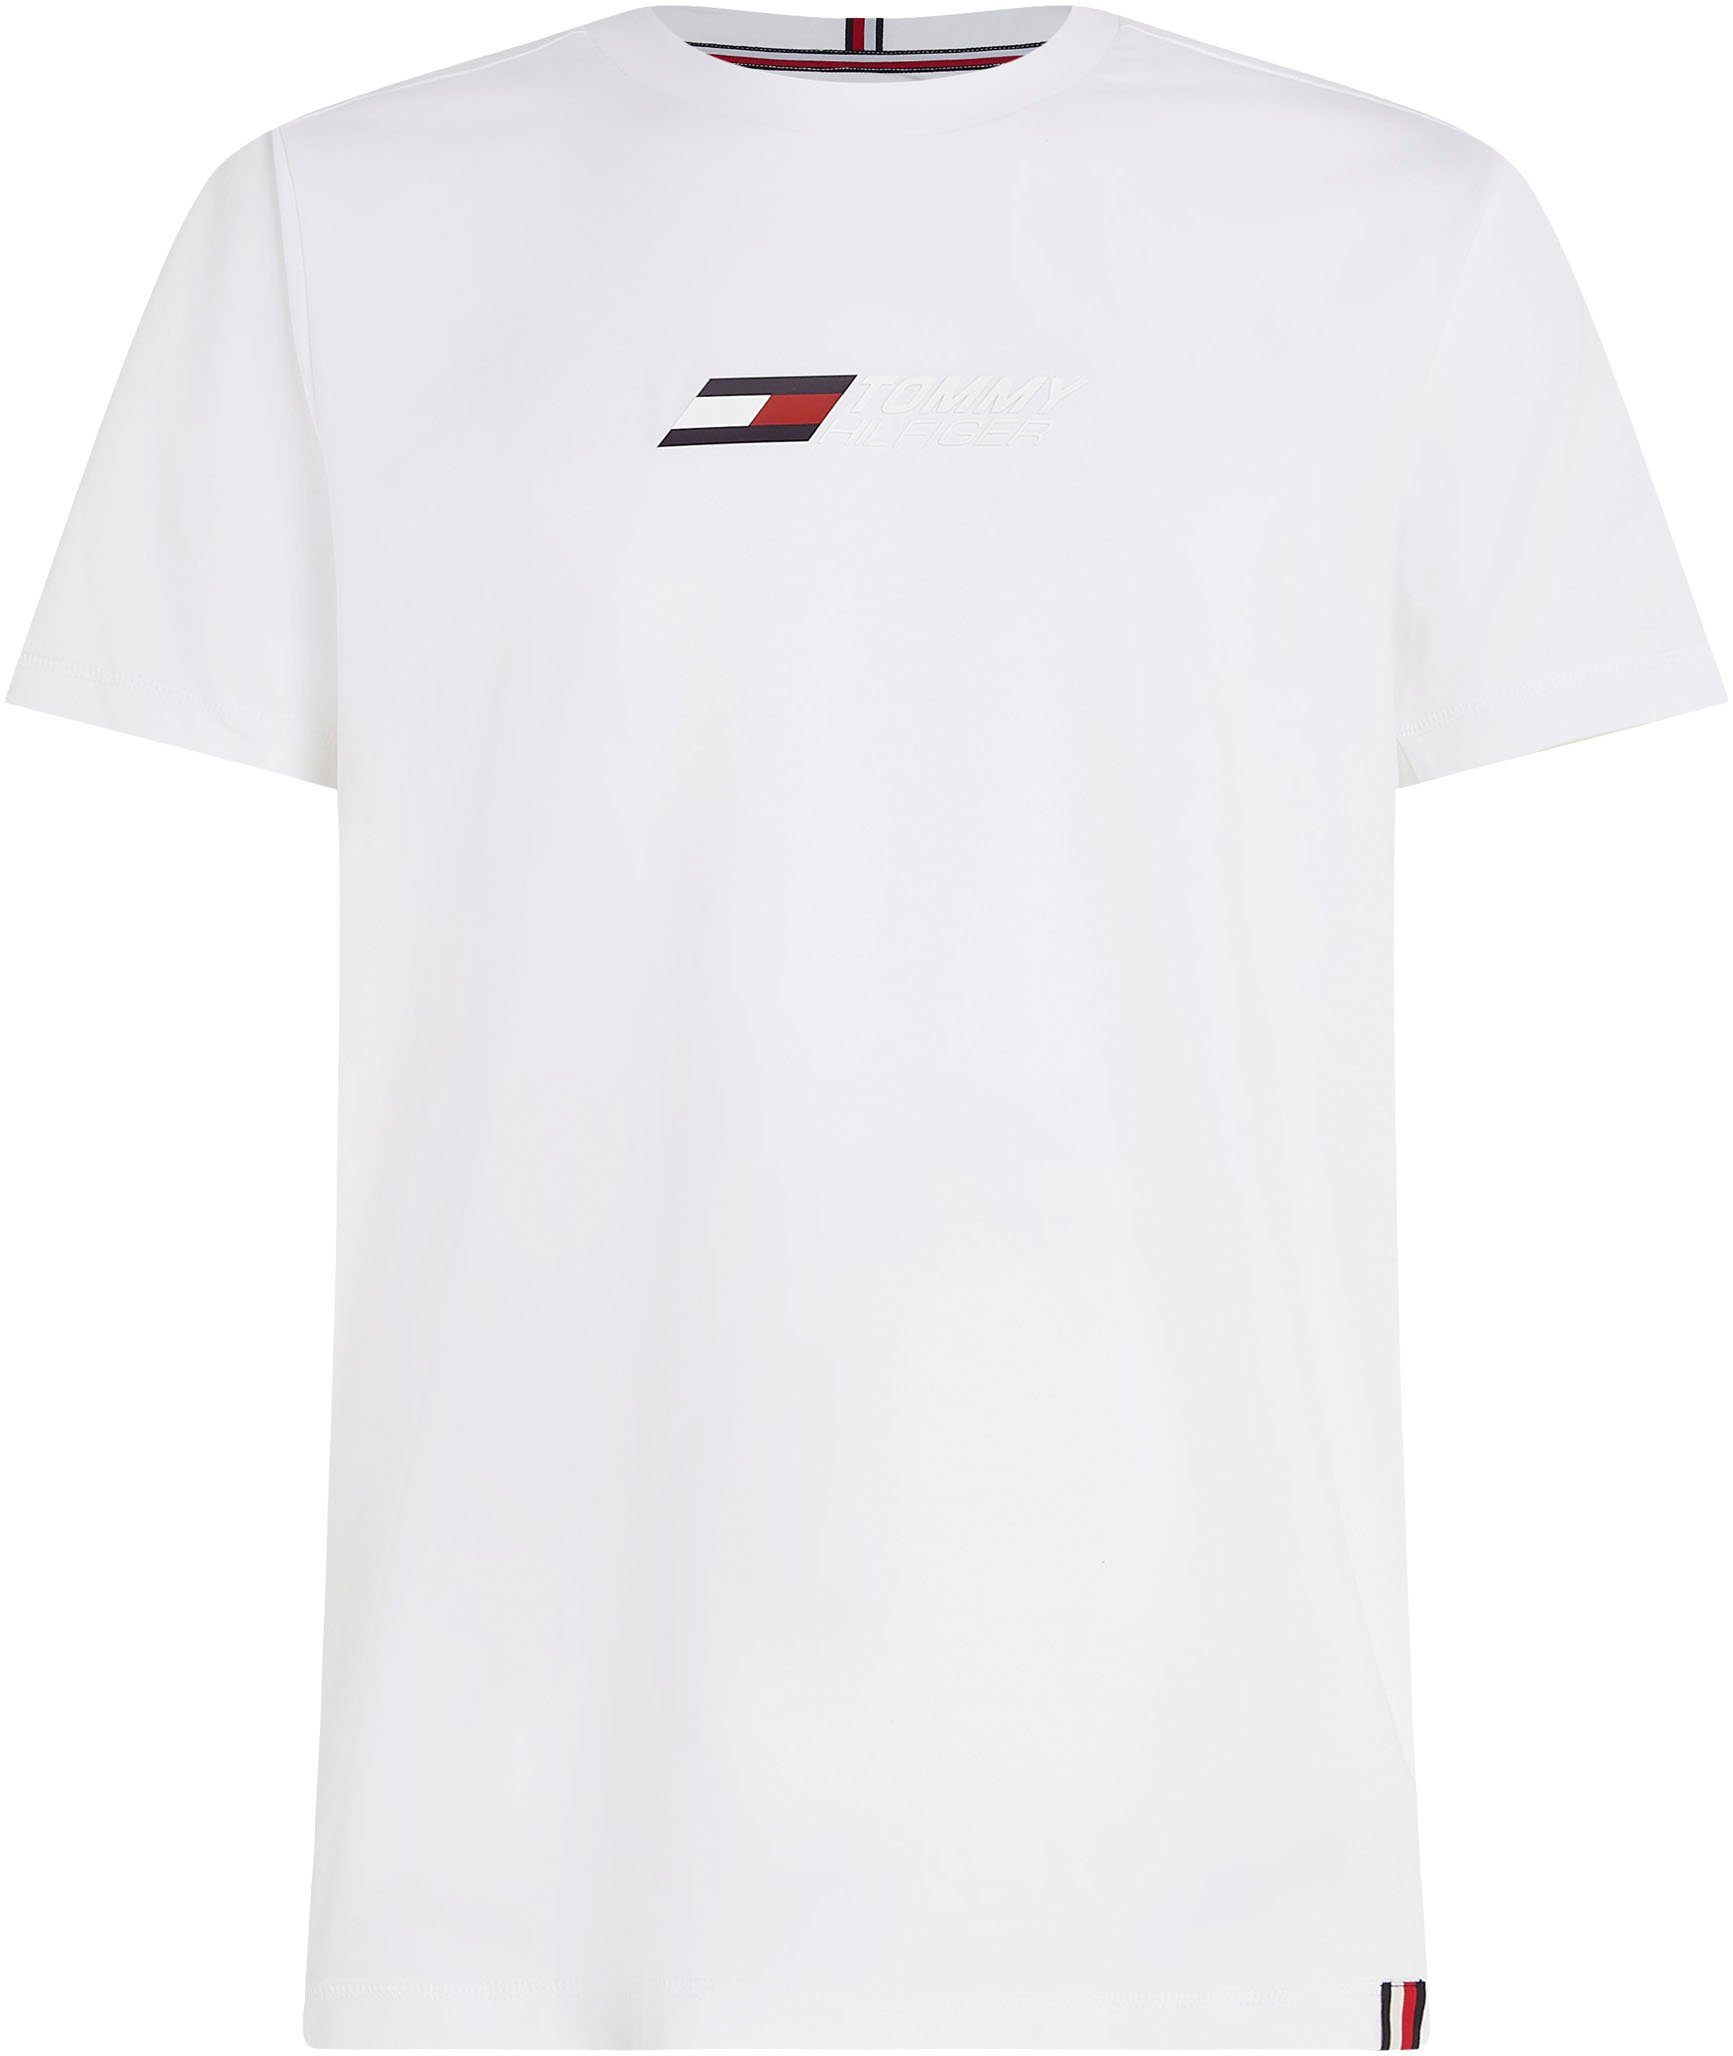 auf T-Shirt ESSENTIAL Brust Optic der BIG White Sport Hilfiger mit Tommy LOGO Logodruck Hilfiger TEE Tommy